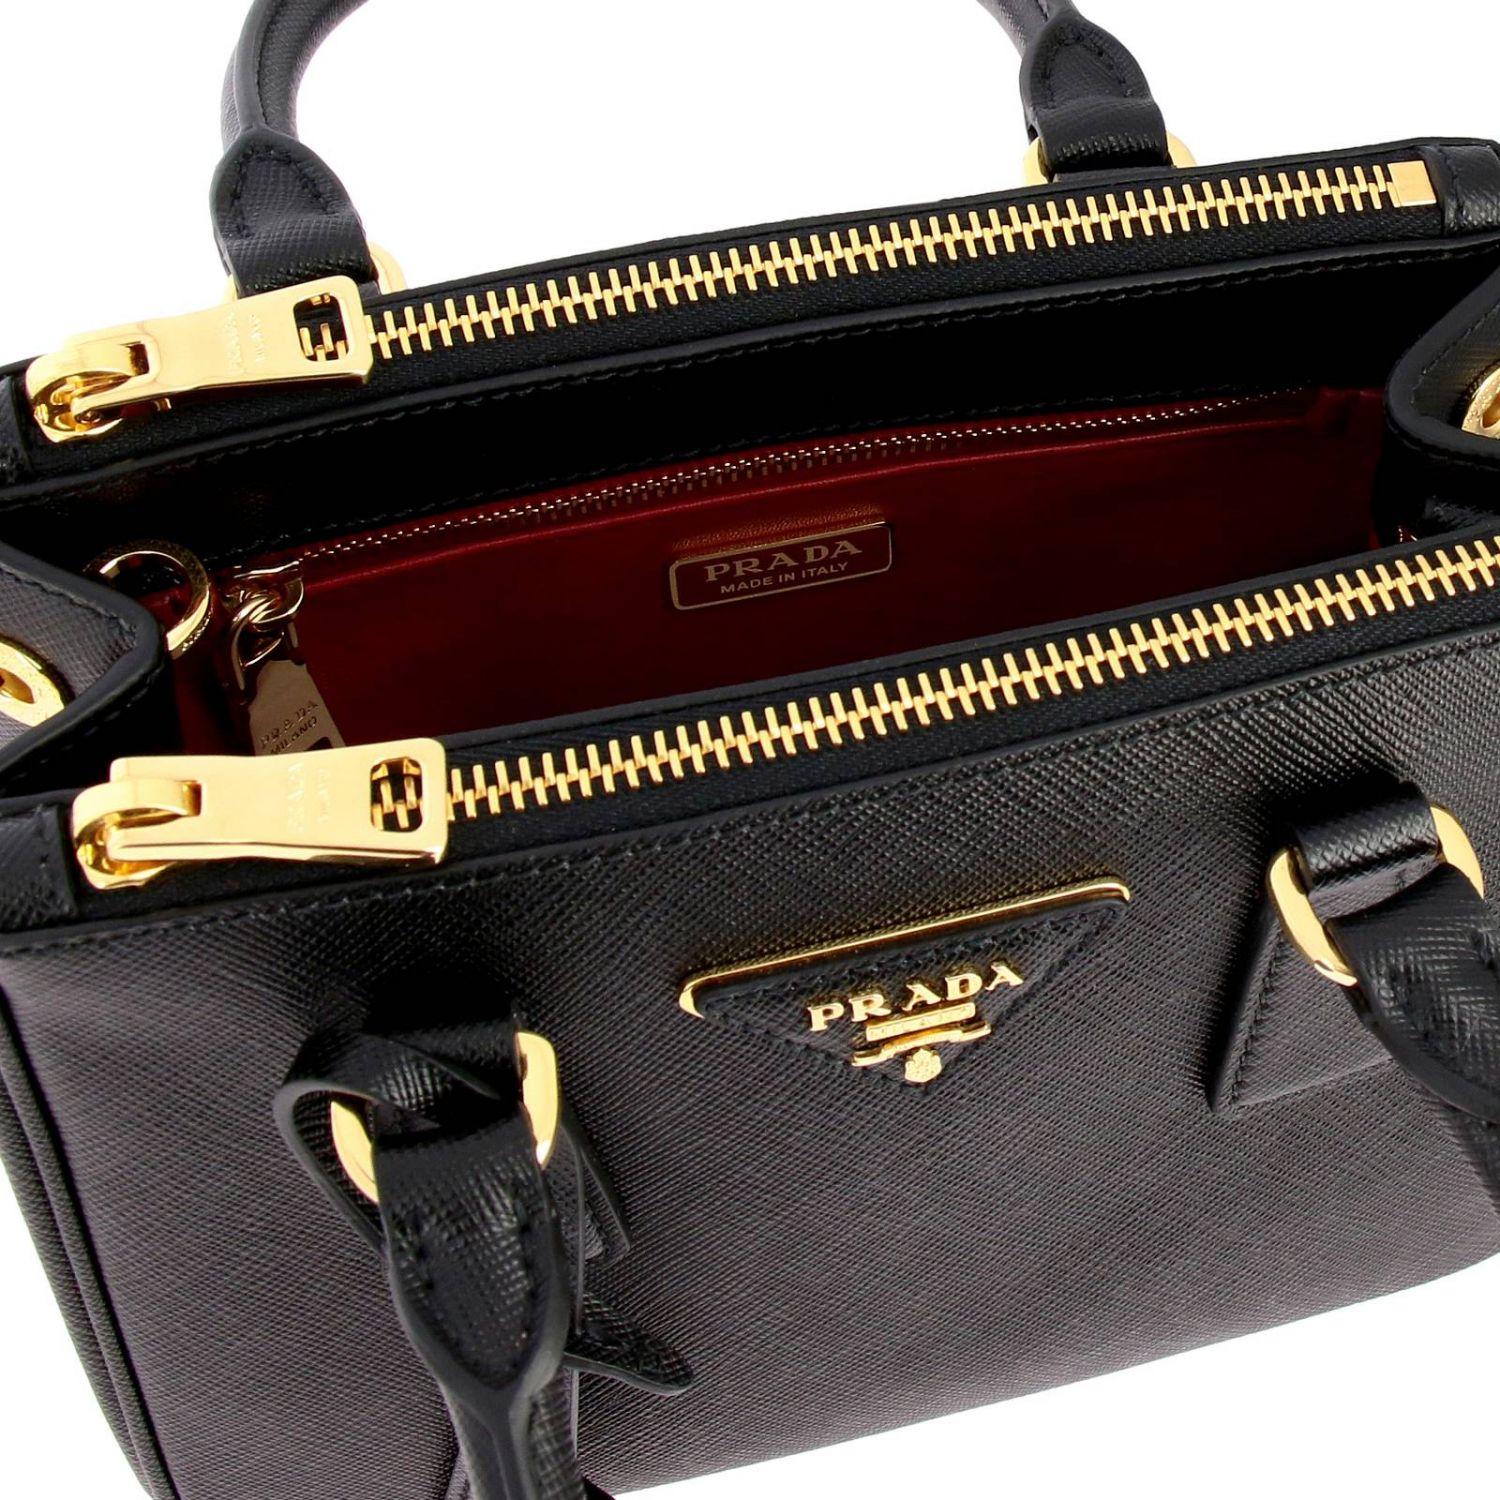 Prada Galleria Double Zip Tote Saffiano Mini Nero Black in Leather